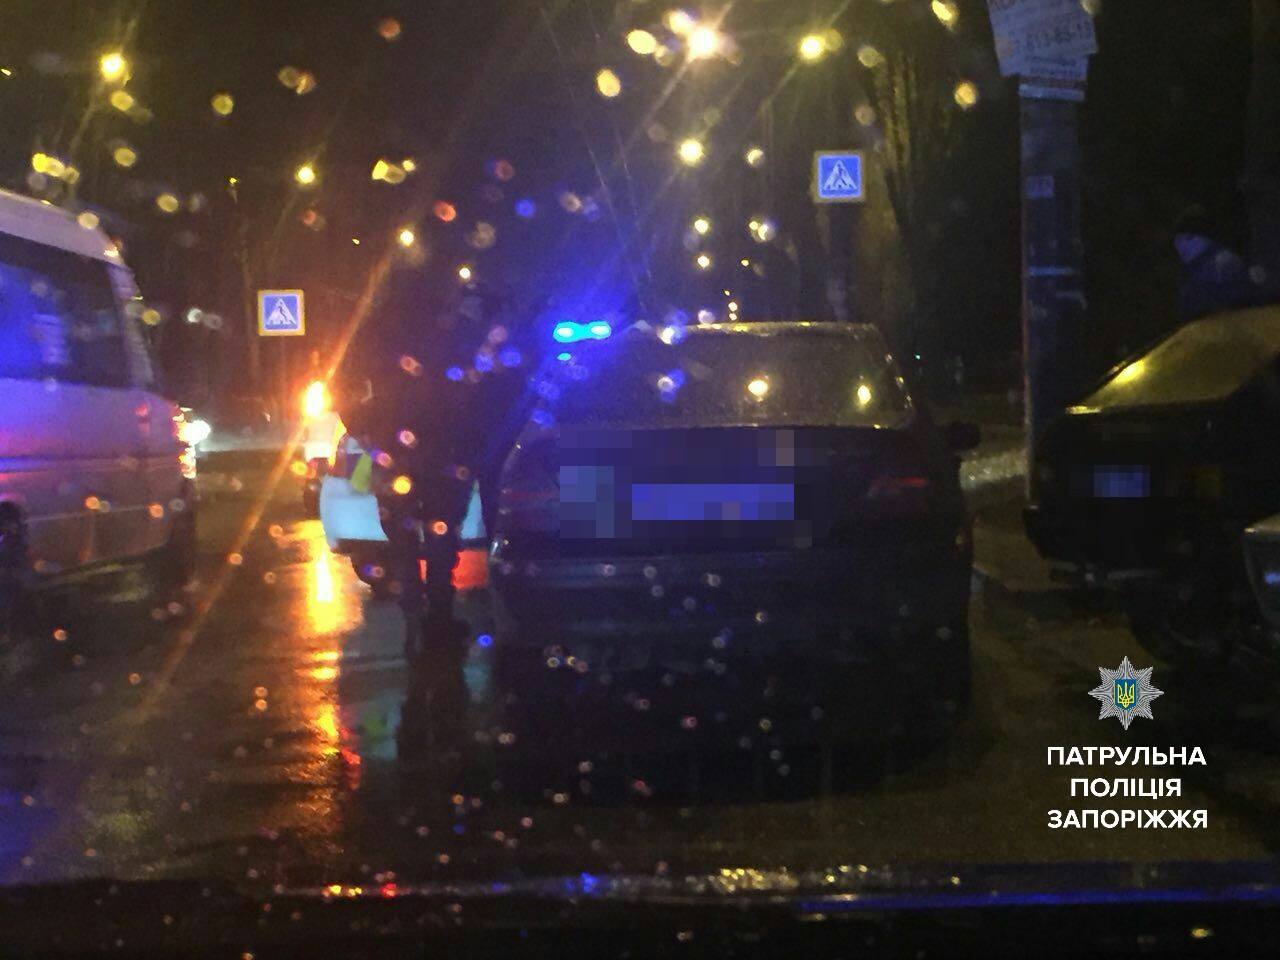 В Запорожье злоумышленники угнали автомобиль и требовали выкуп у владельца - ФОТО